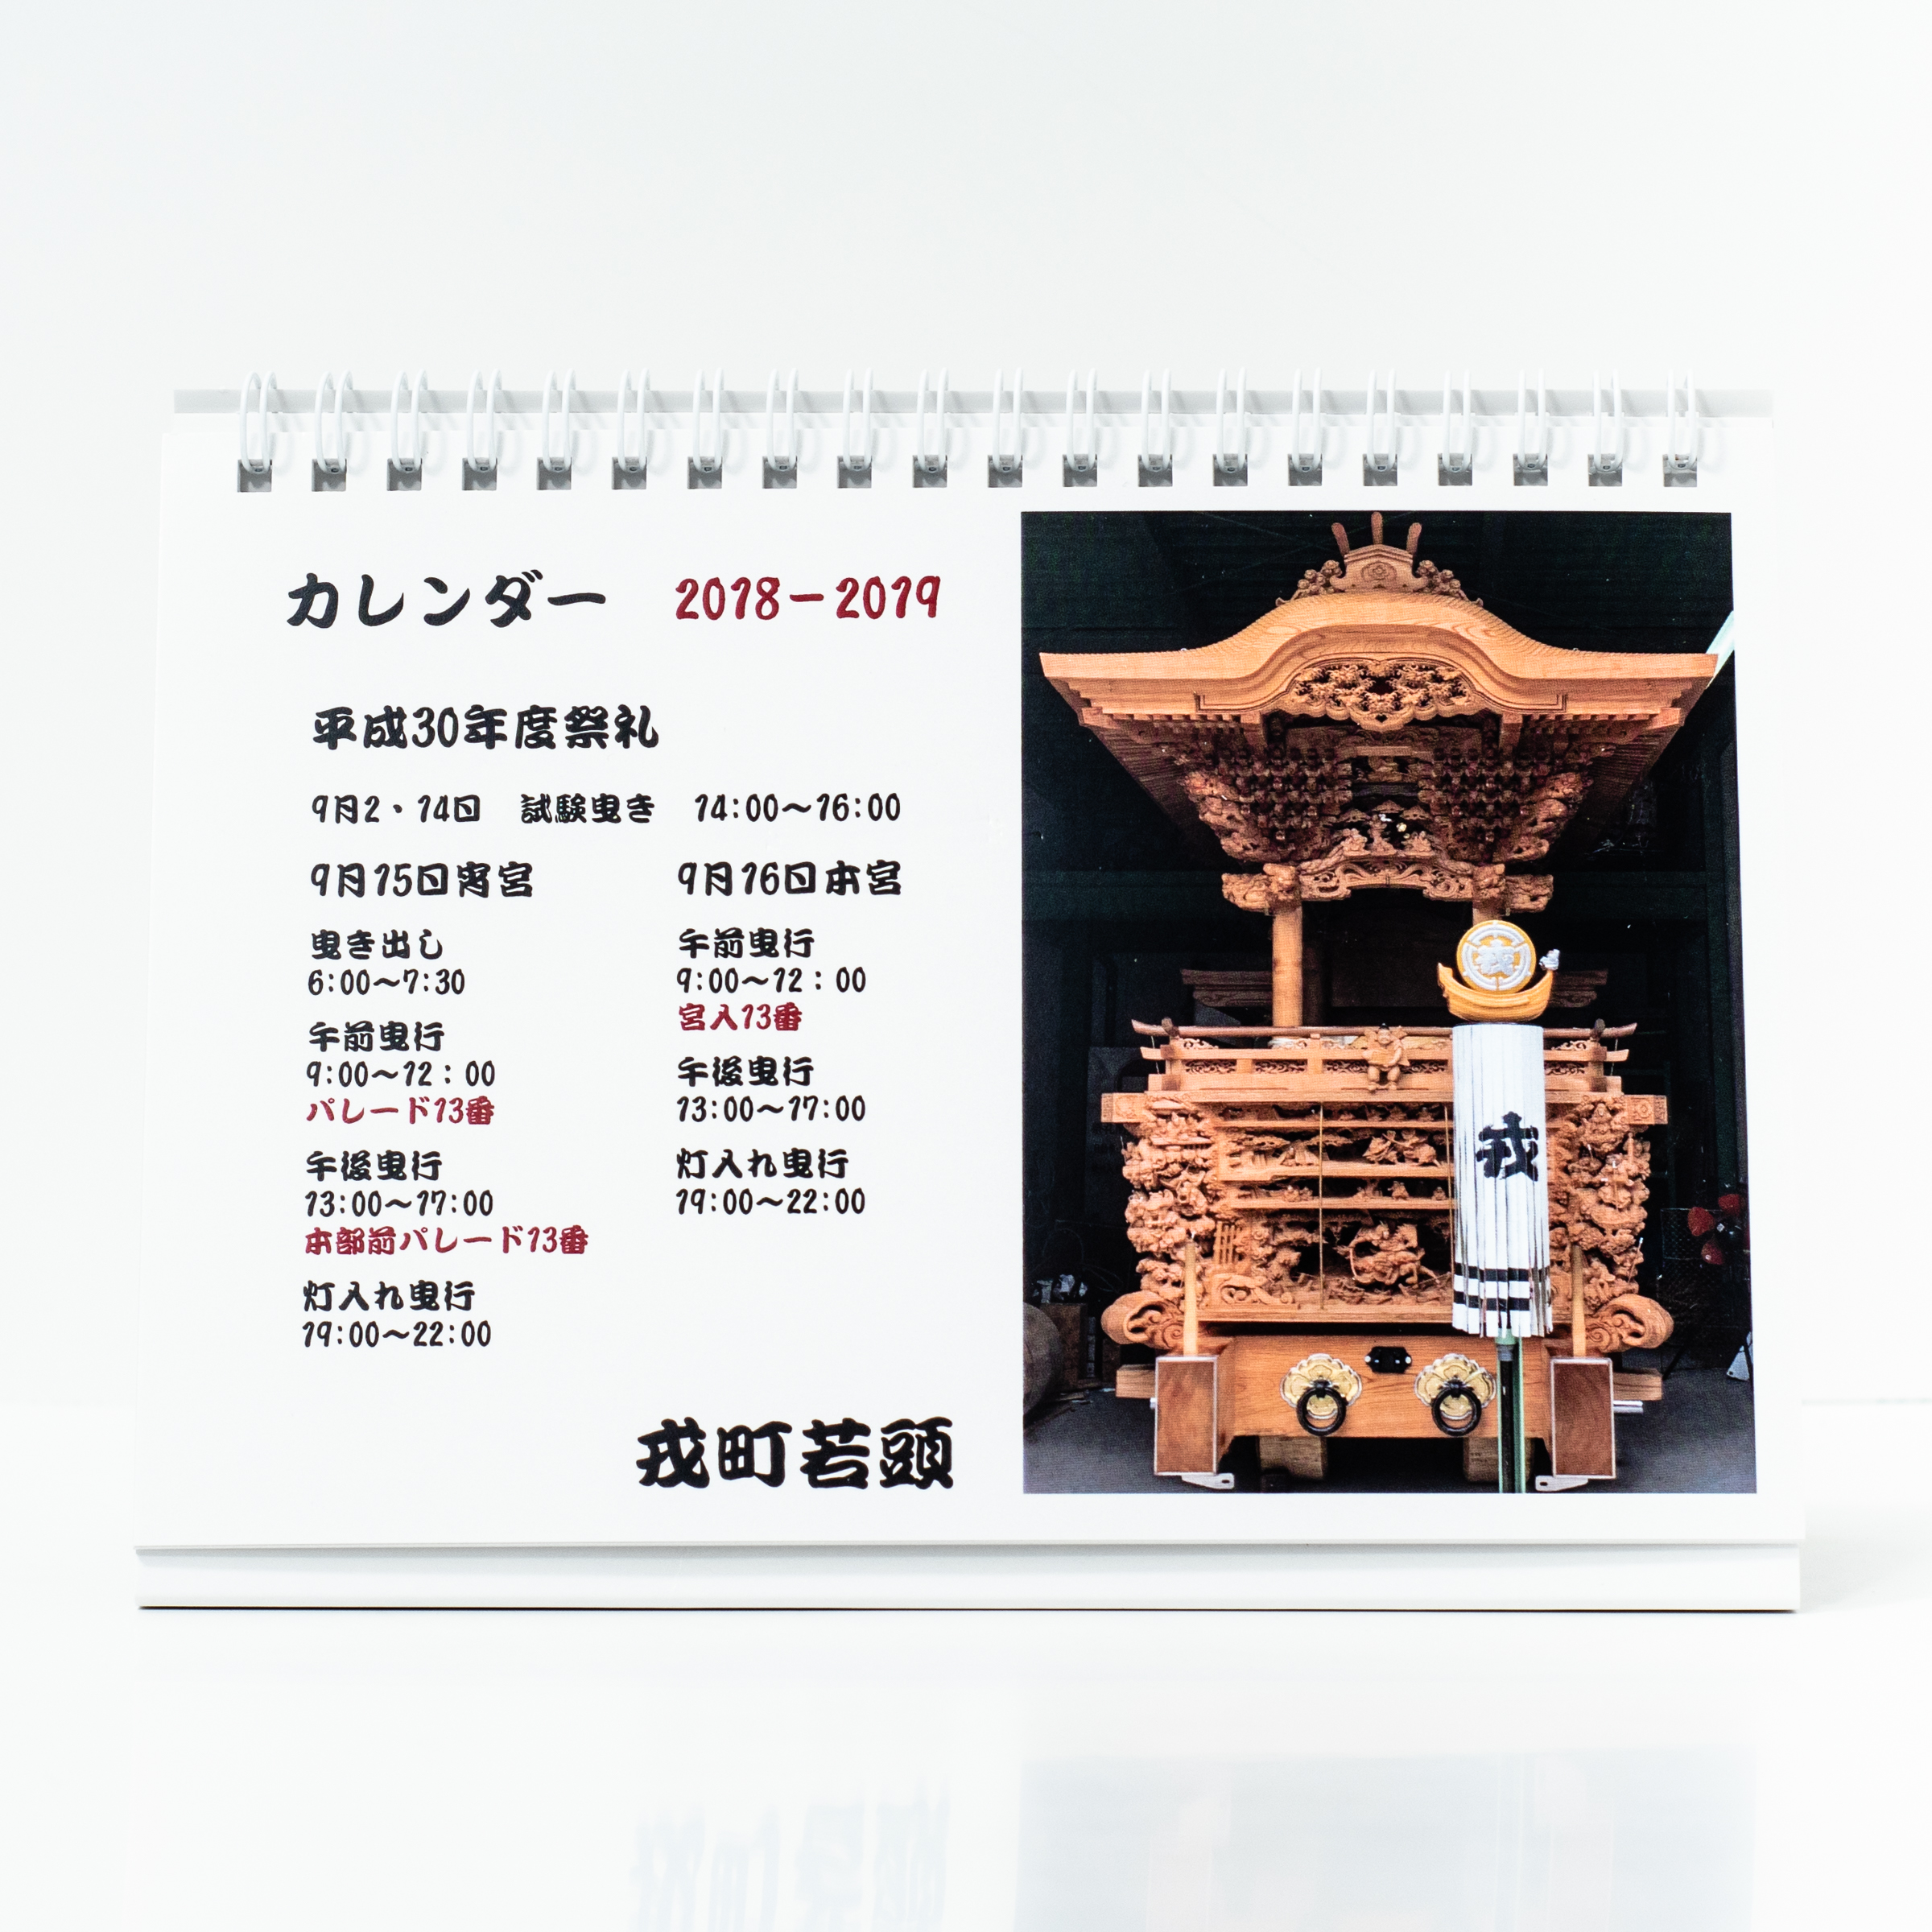 「戎町若頭 様」製作のオリジナルカレンダー